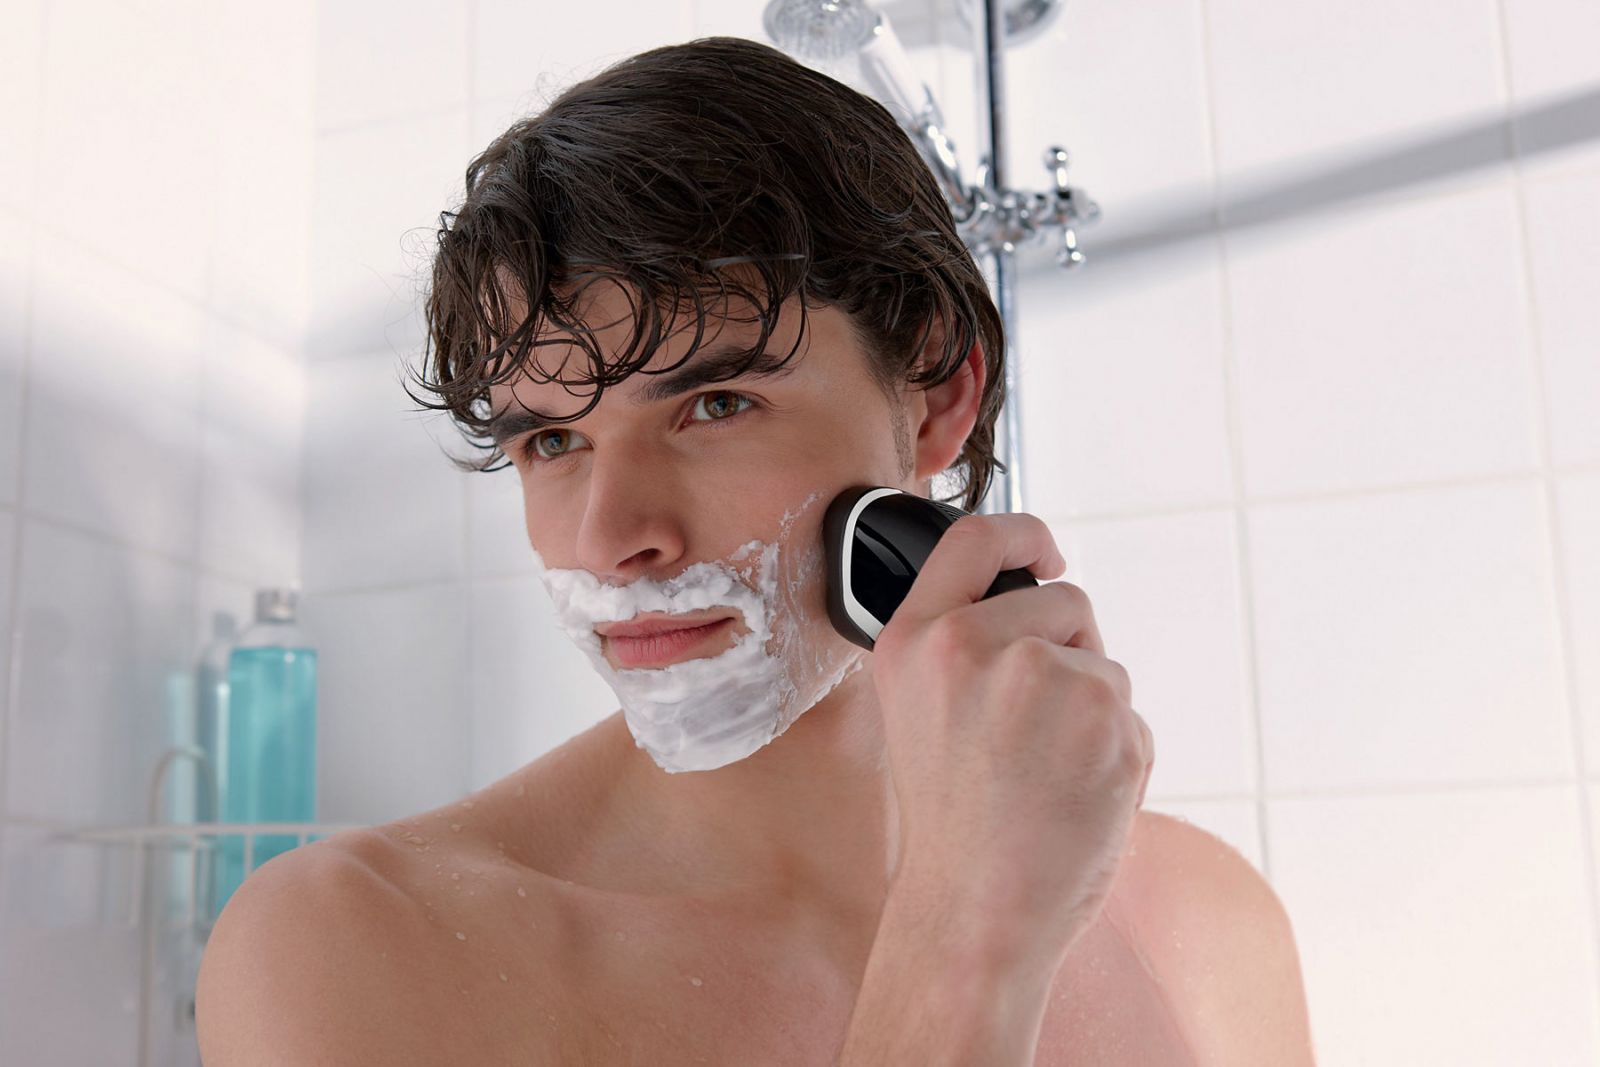 Cách cạo râu đúng để không nguy hại đến sức khỏe nam giới